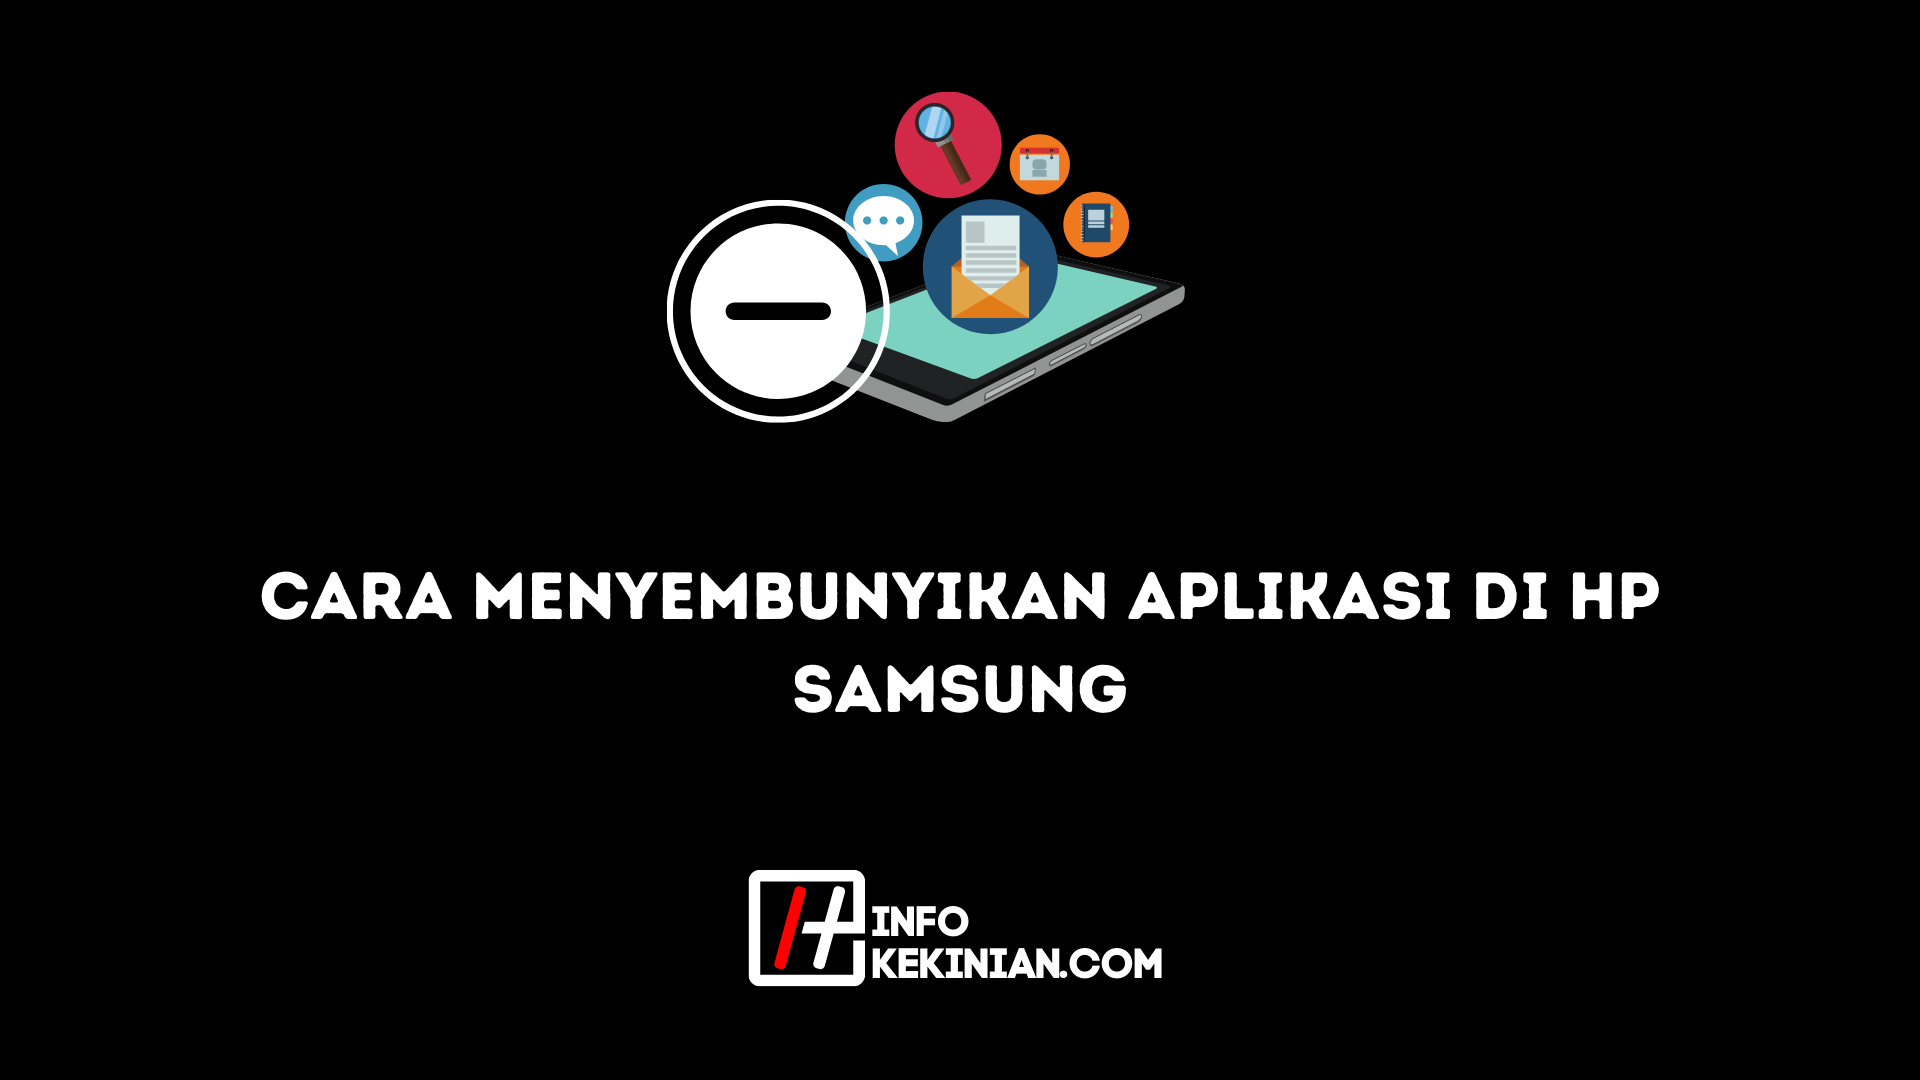 Comment masquer les applications sur les téléphones Samsung